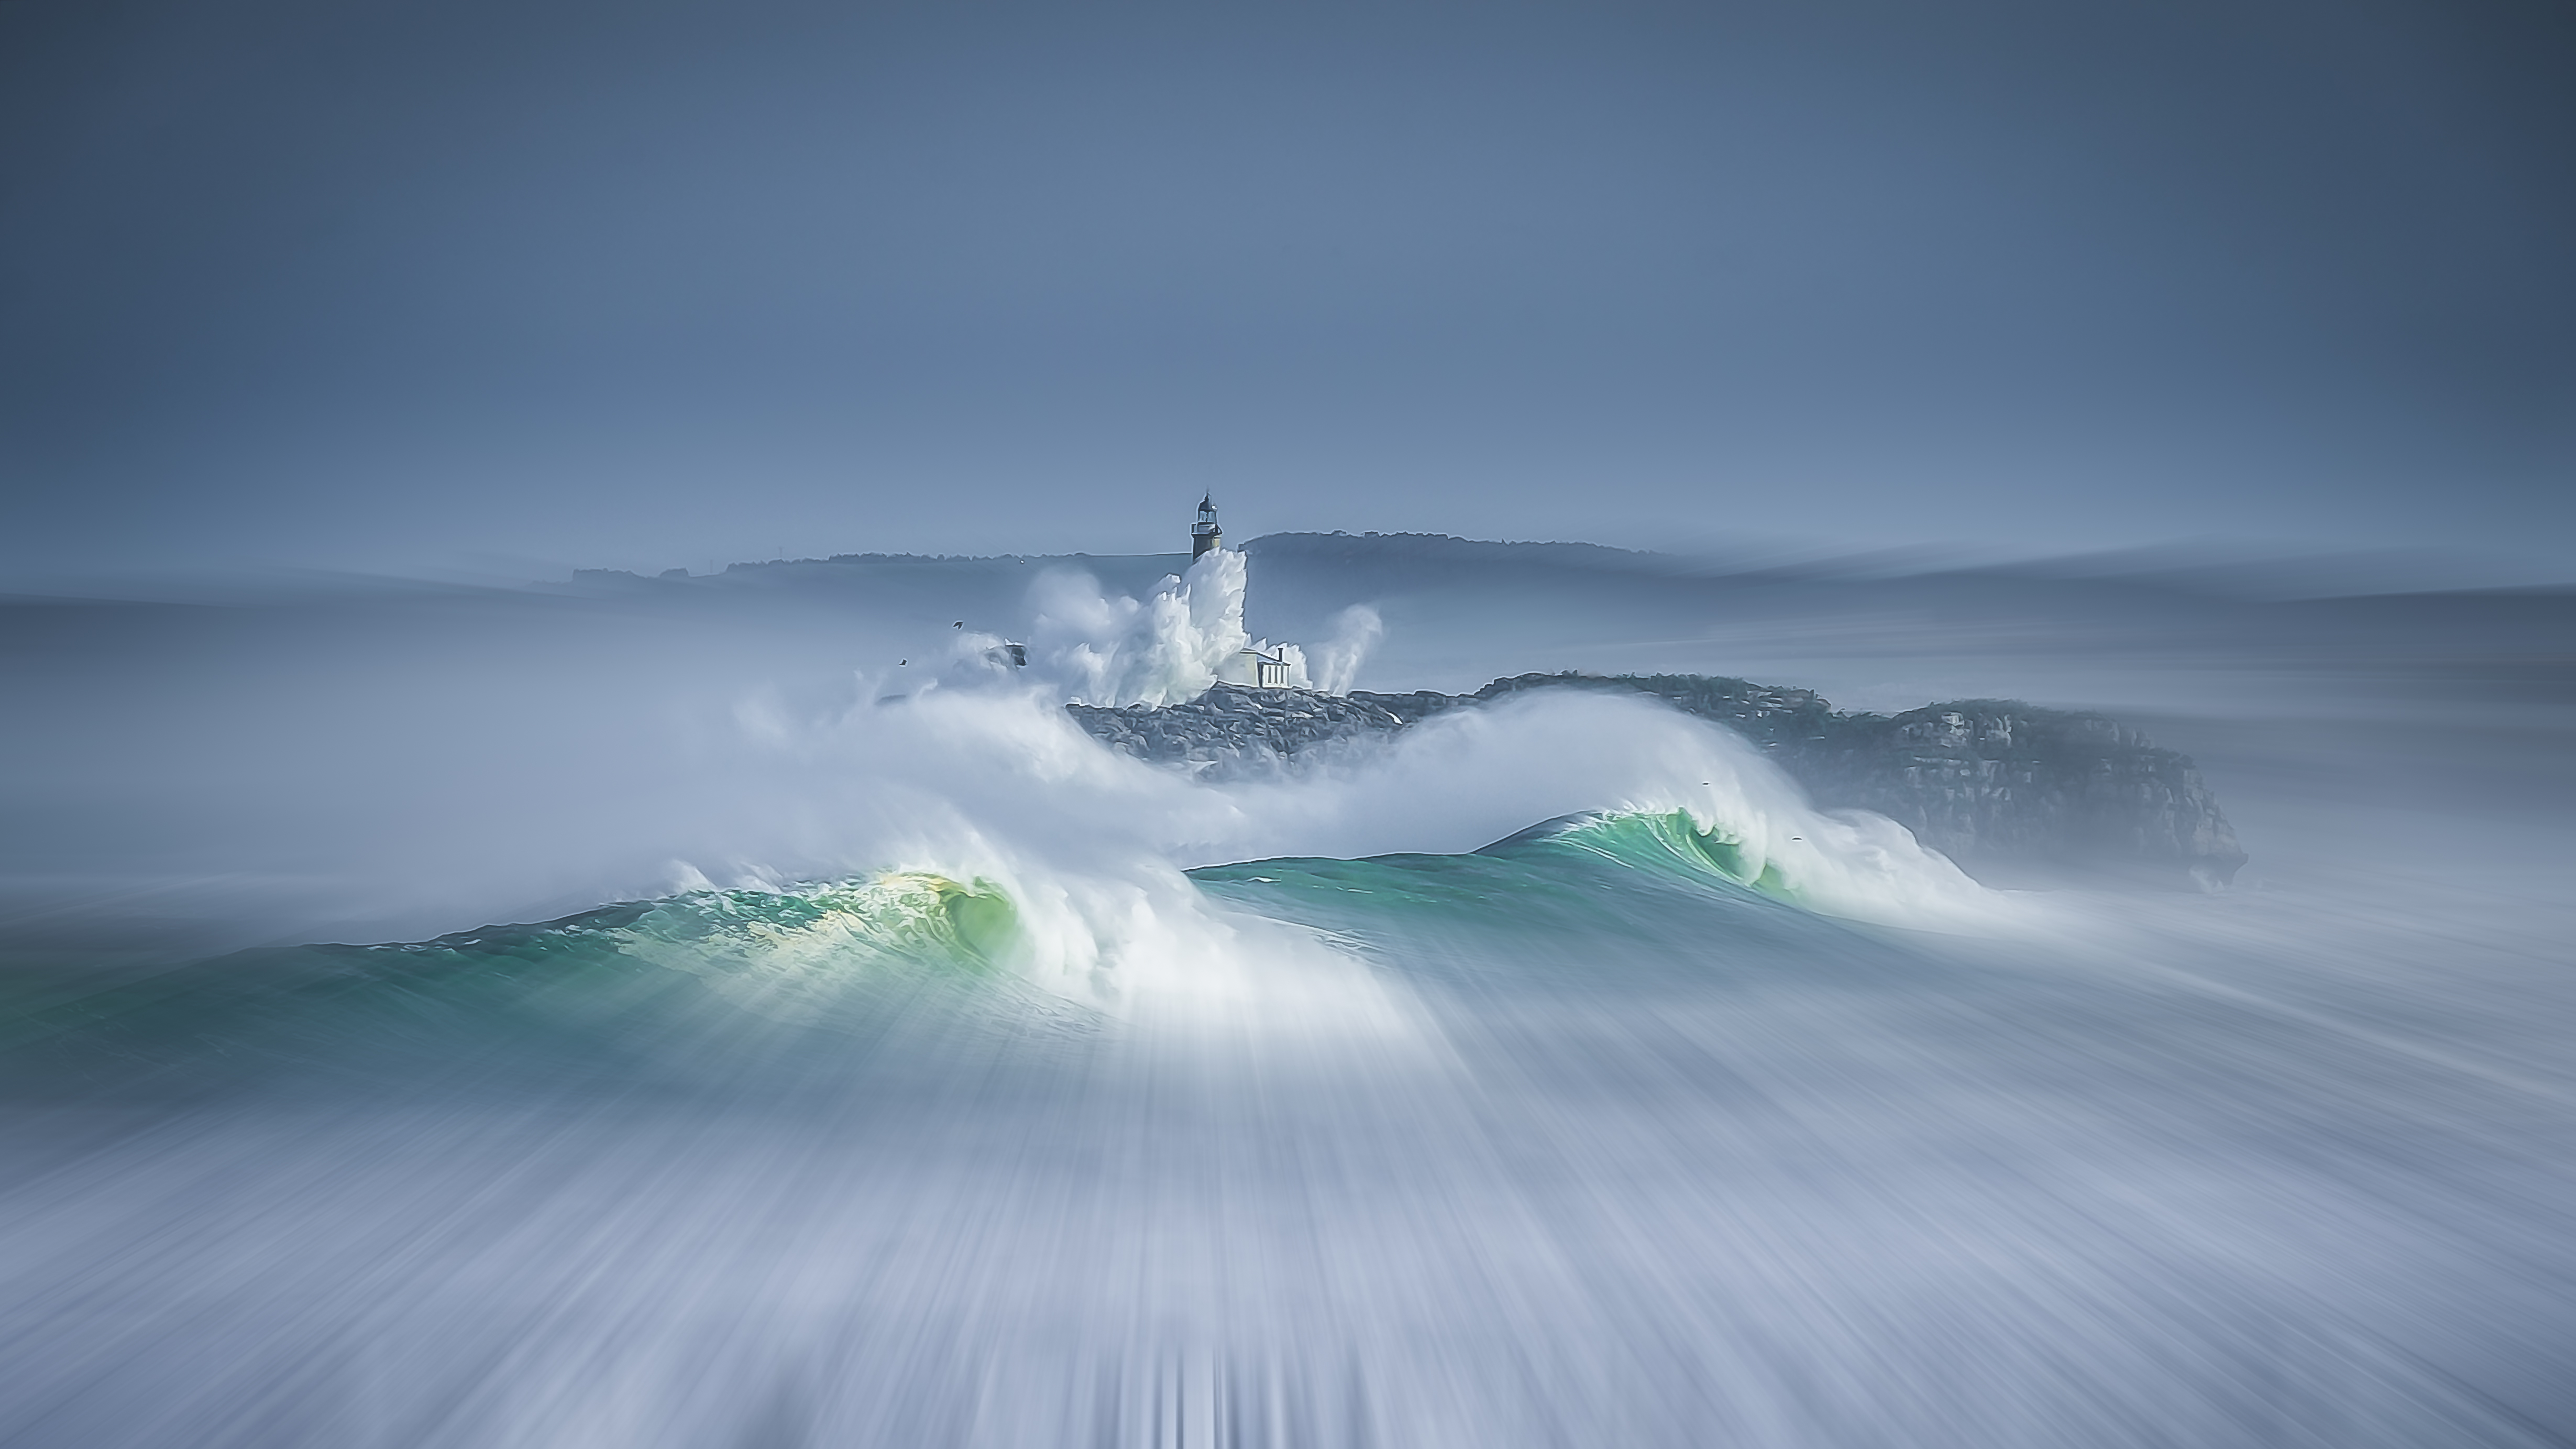 lighthouse wallpaper storm